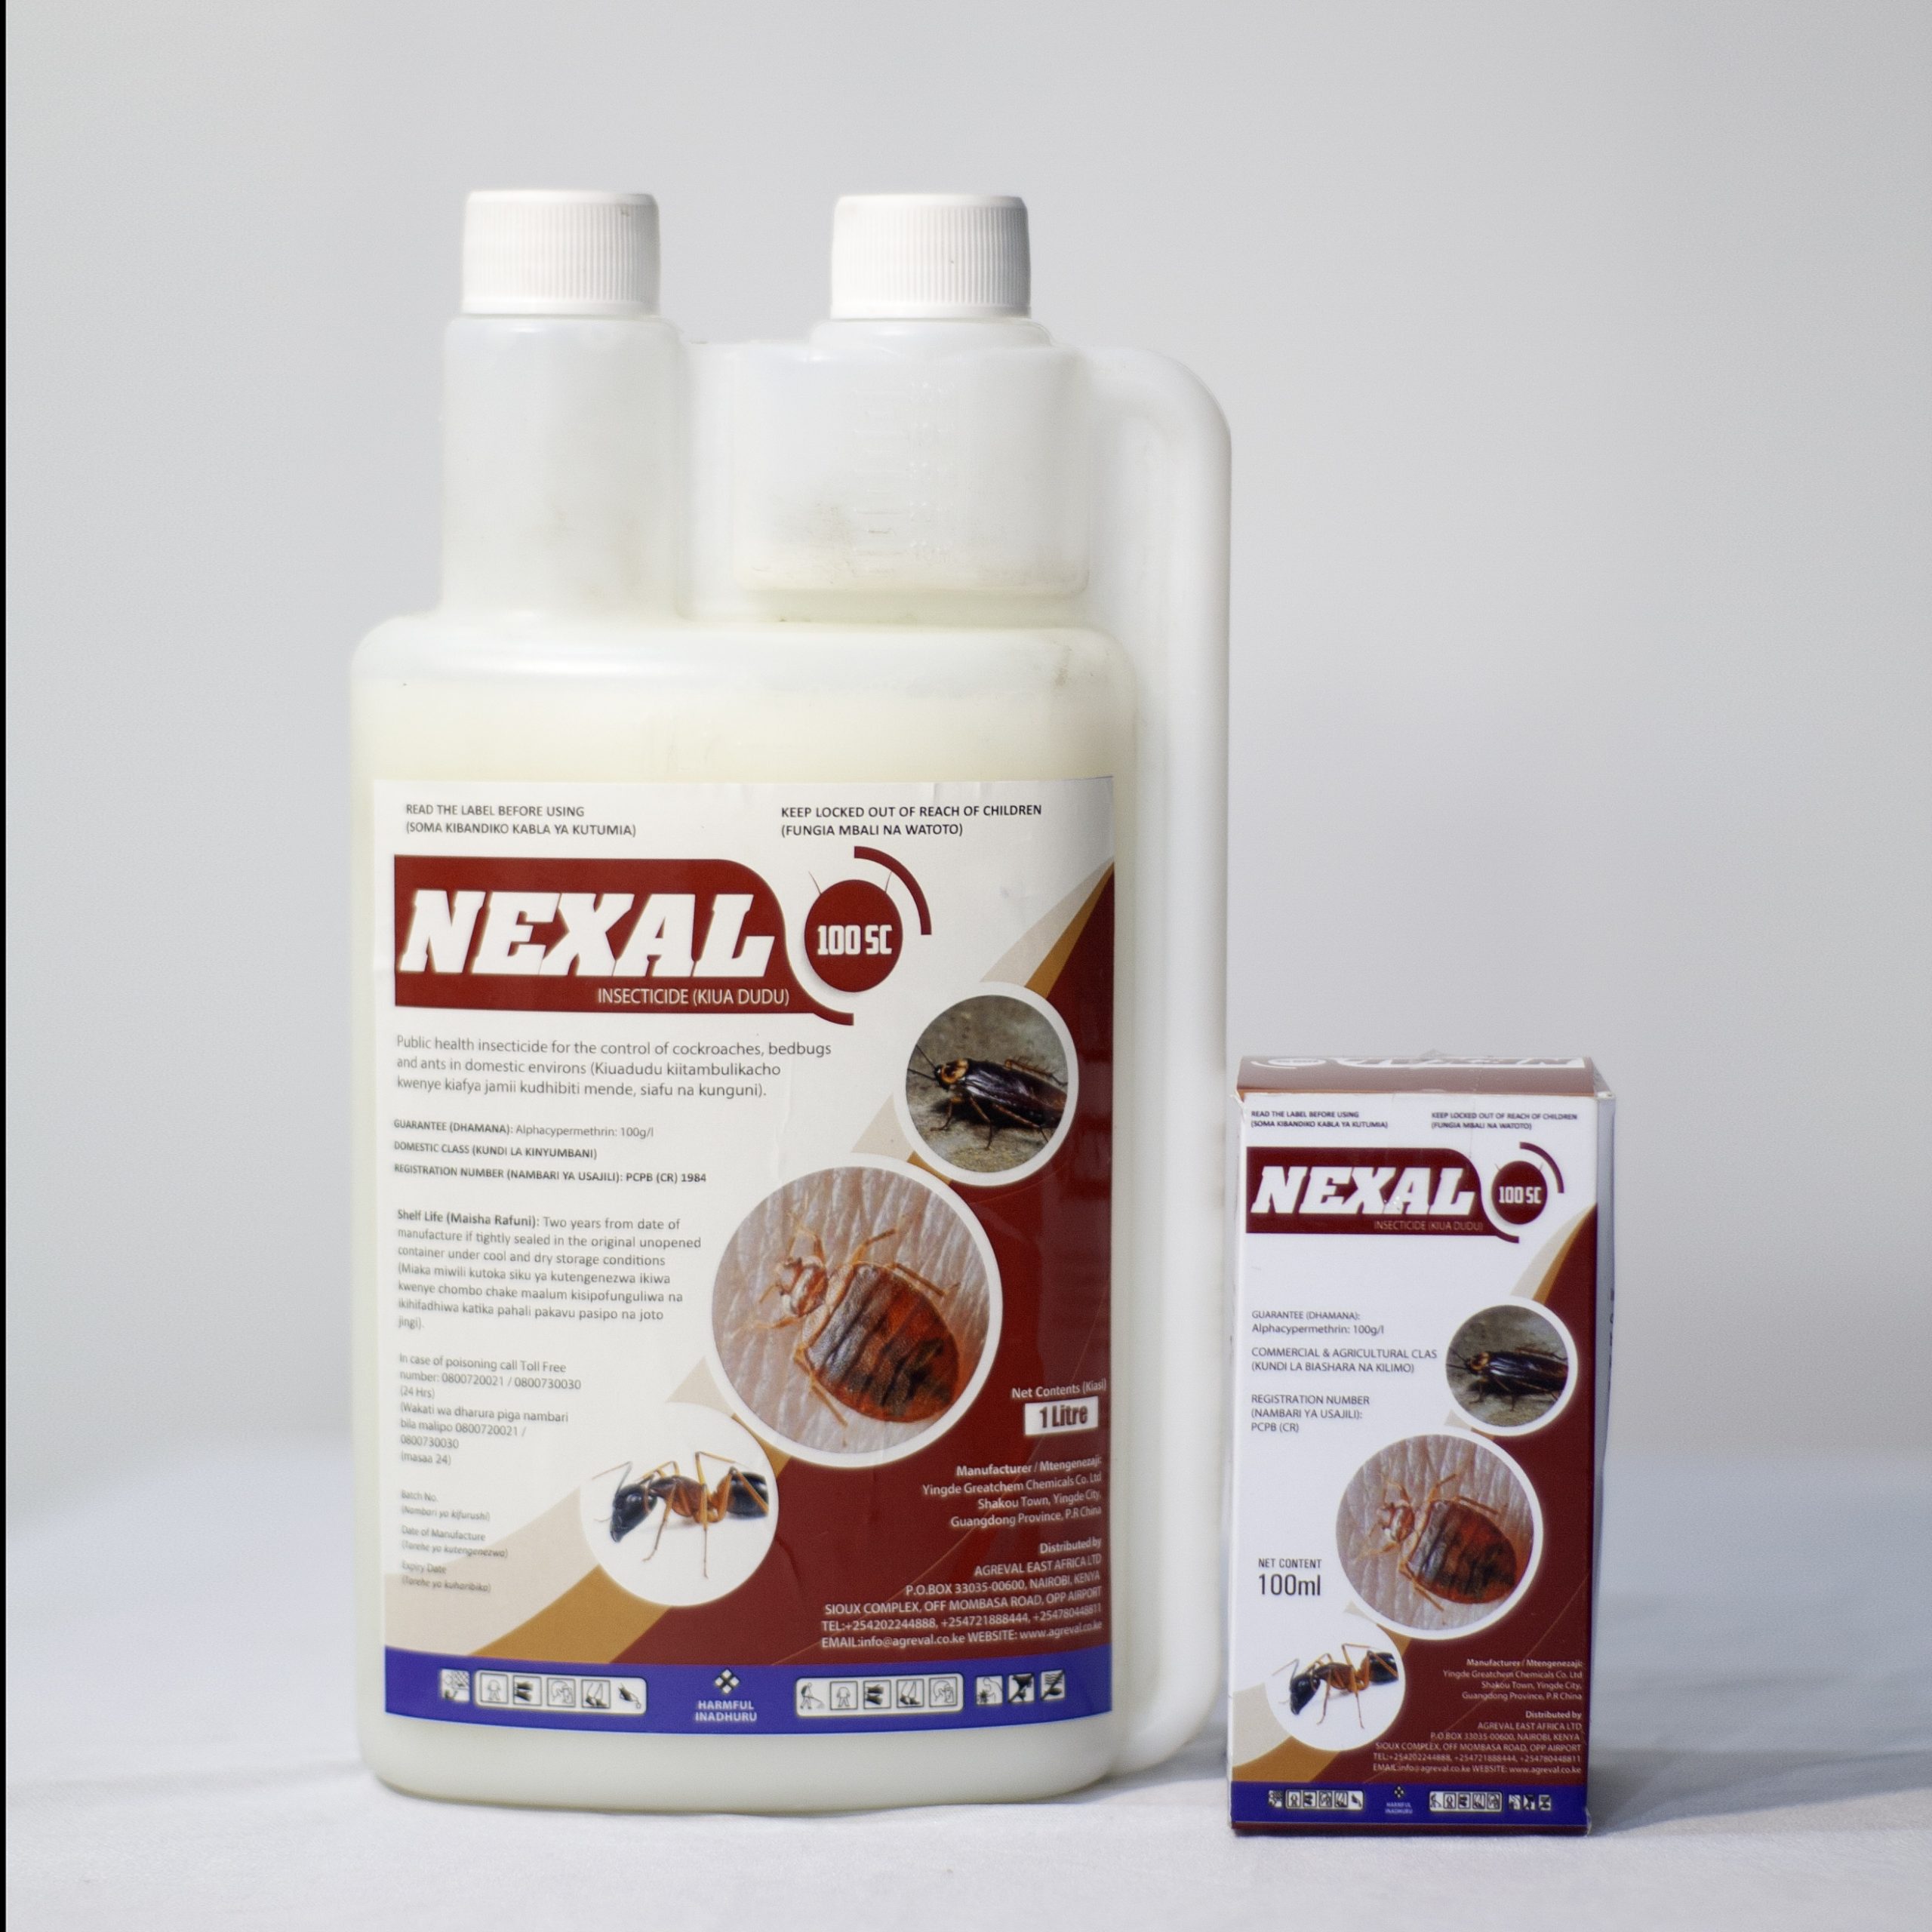 Nexal 100 SC - 25ml